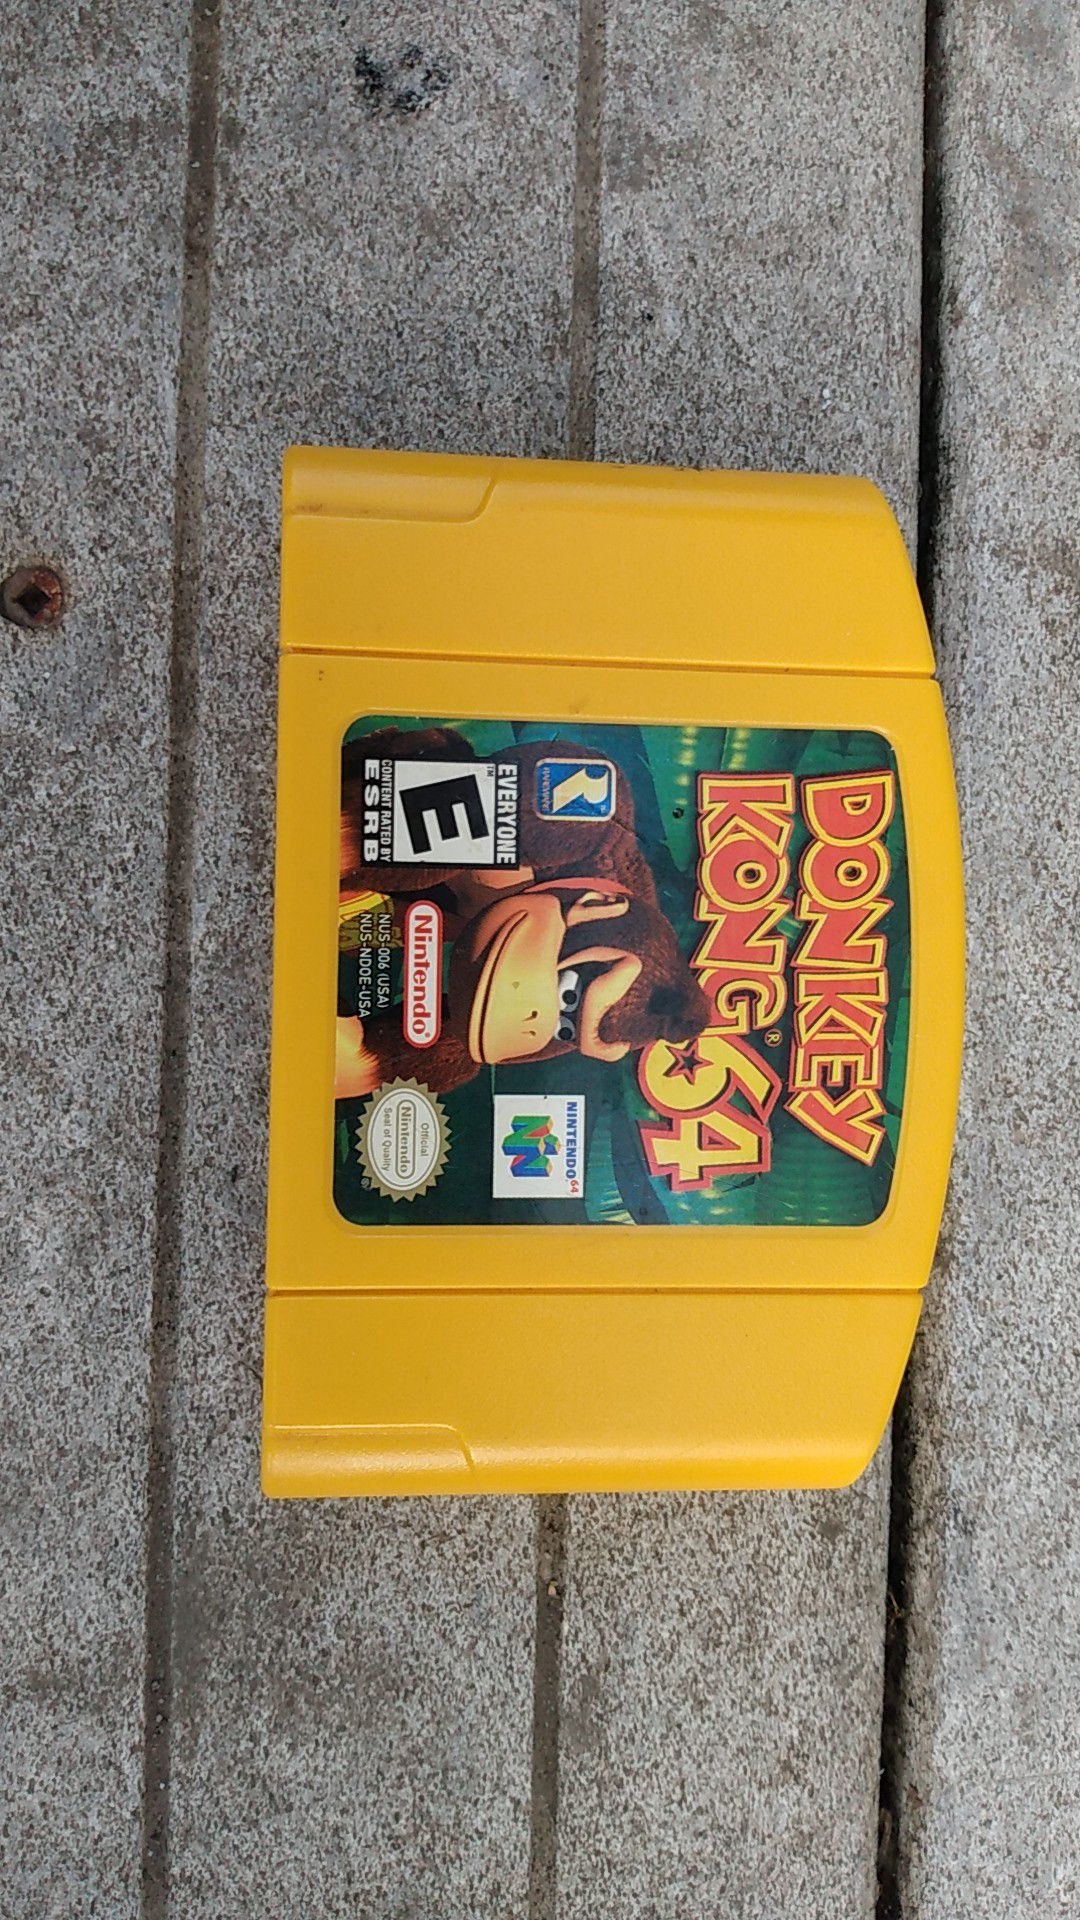 Donkey Kong 64 game